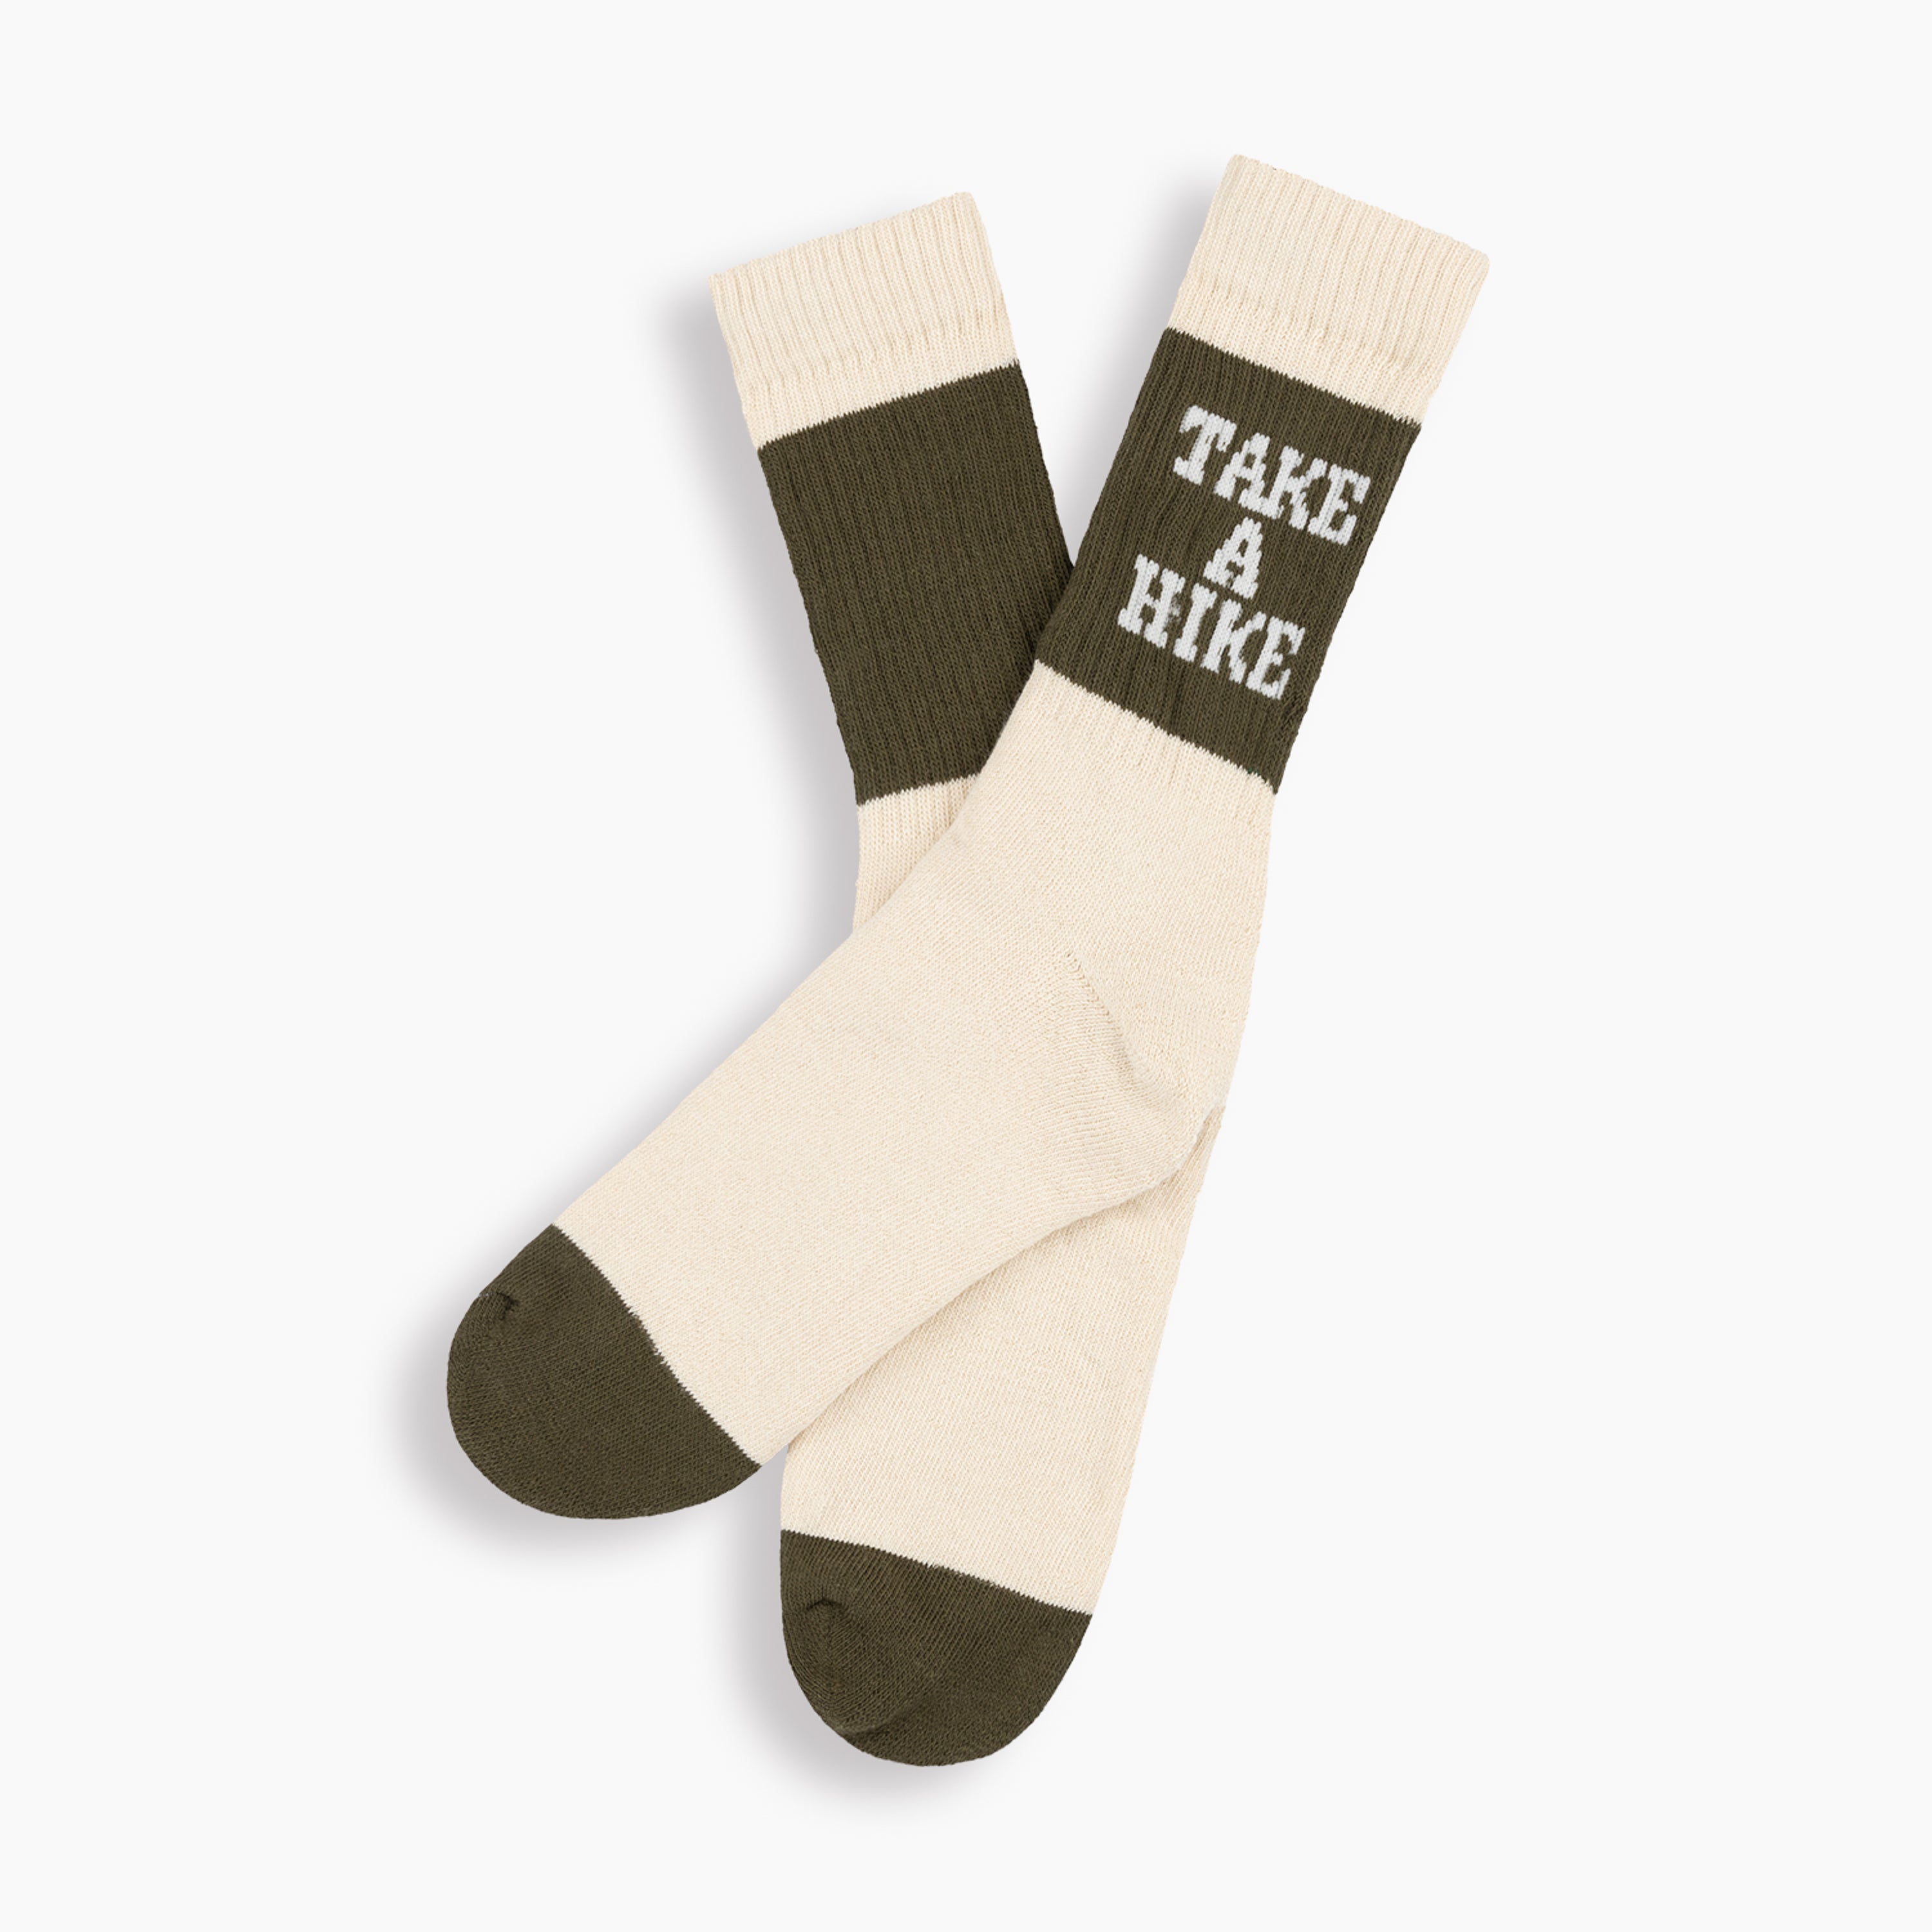 Take A Hike Socks